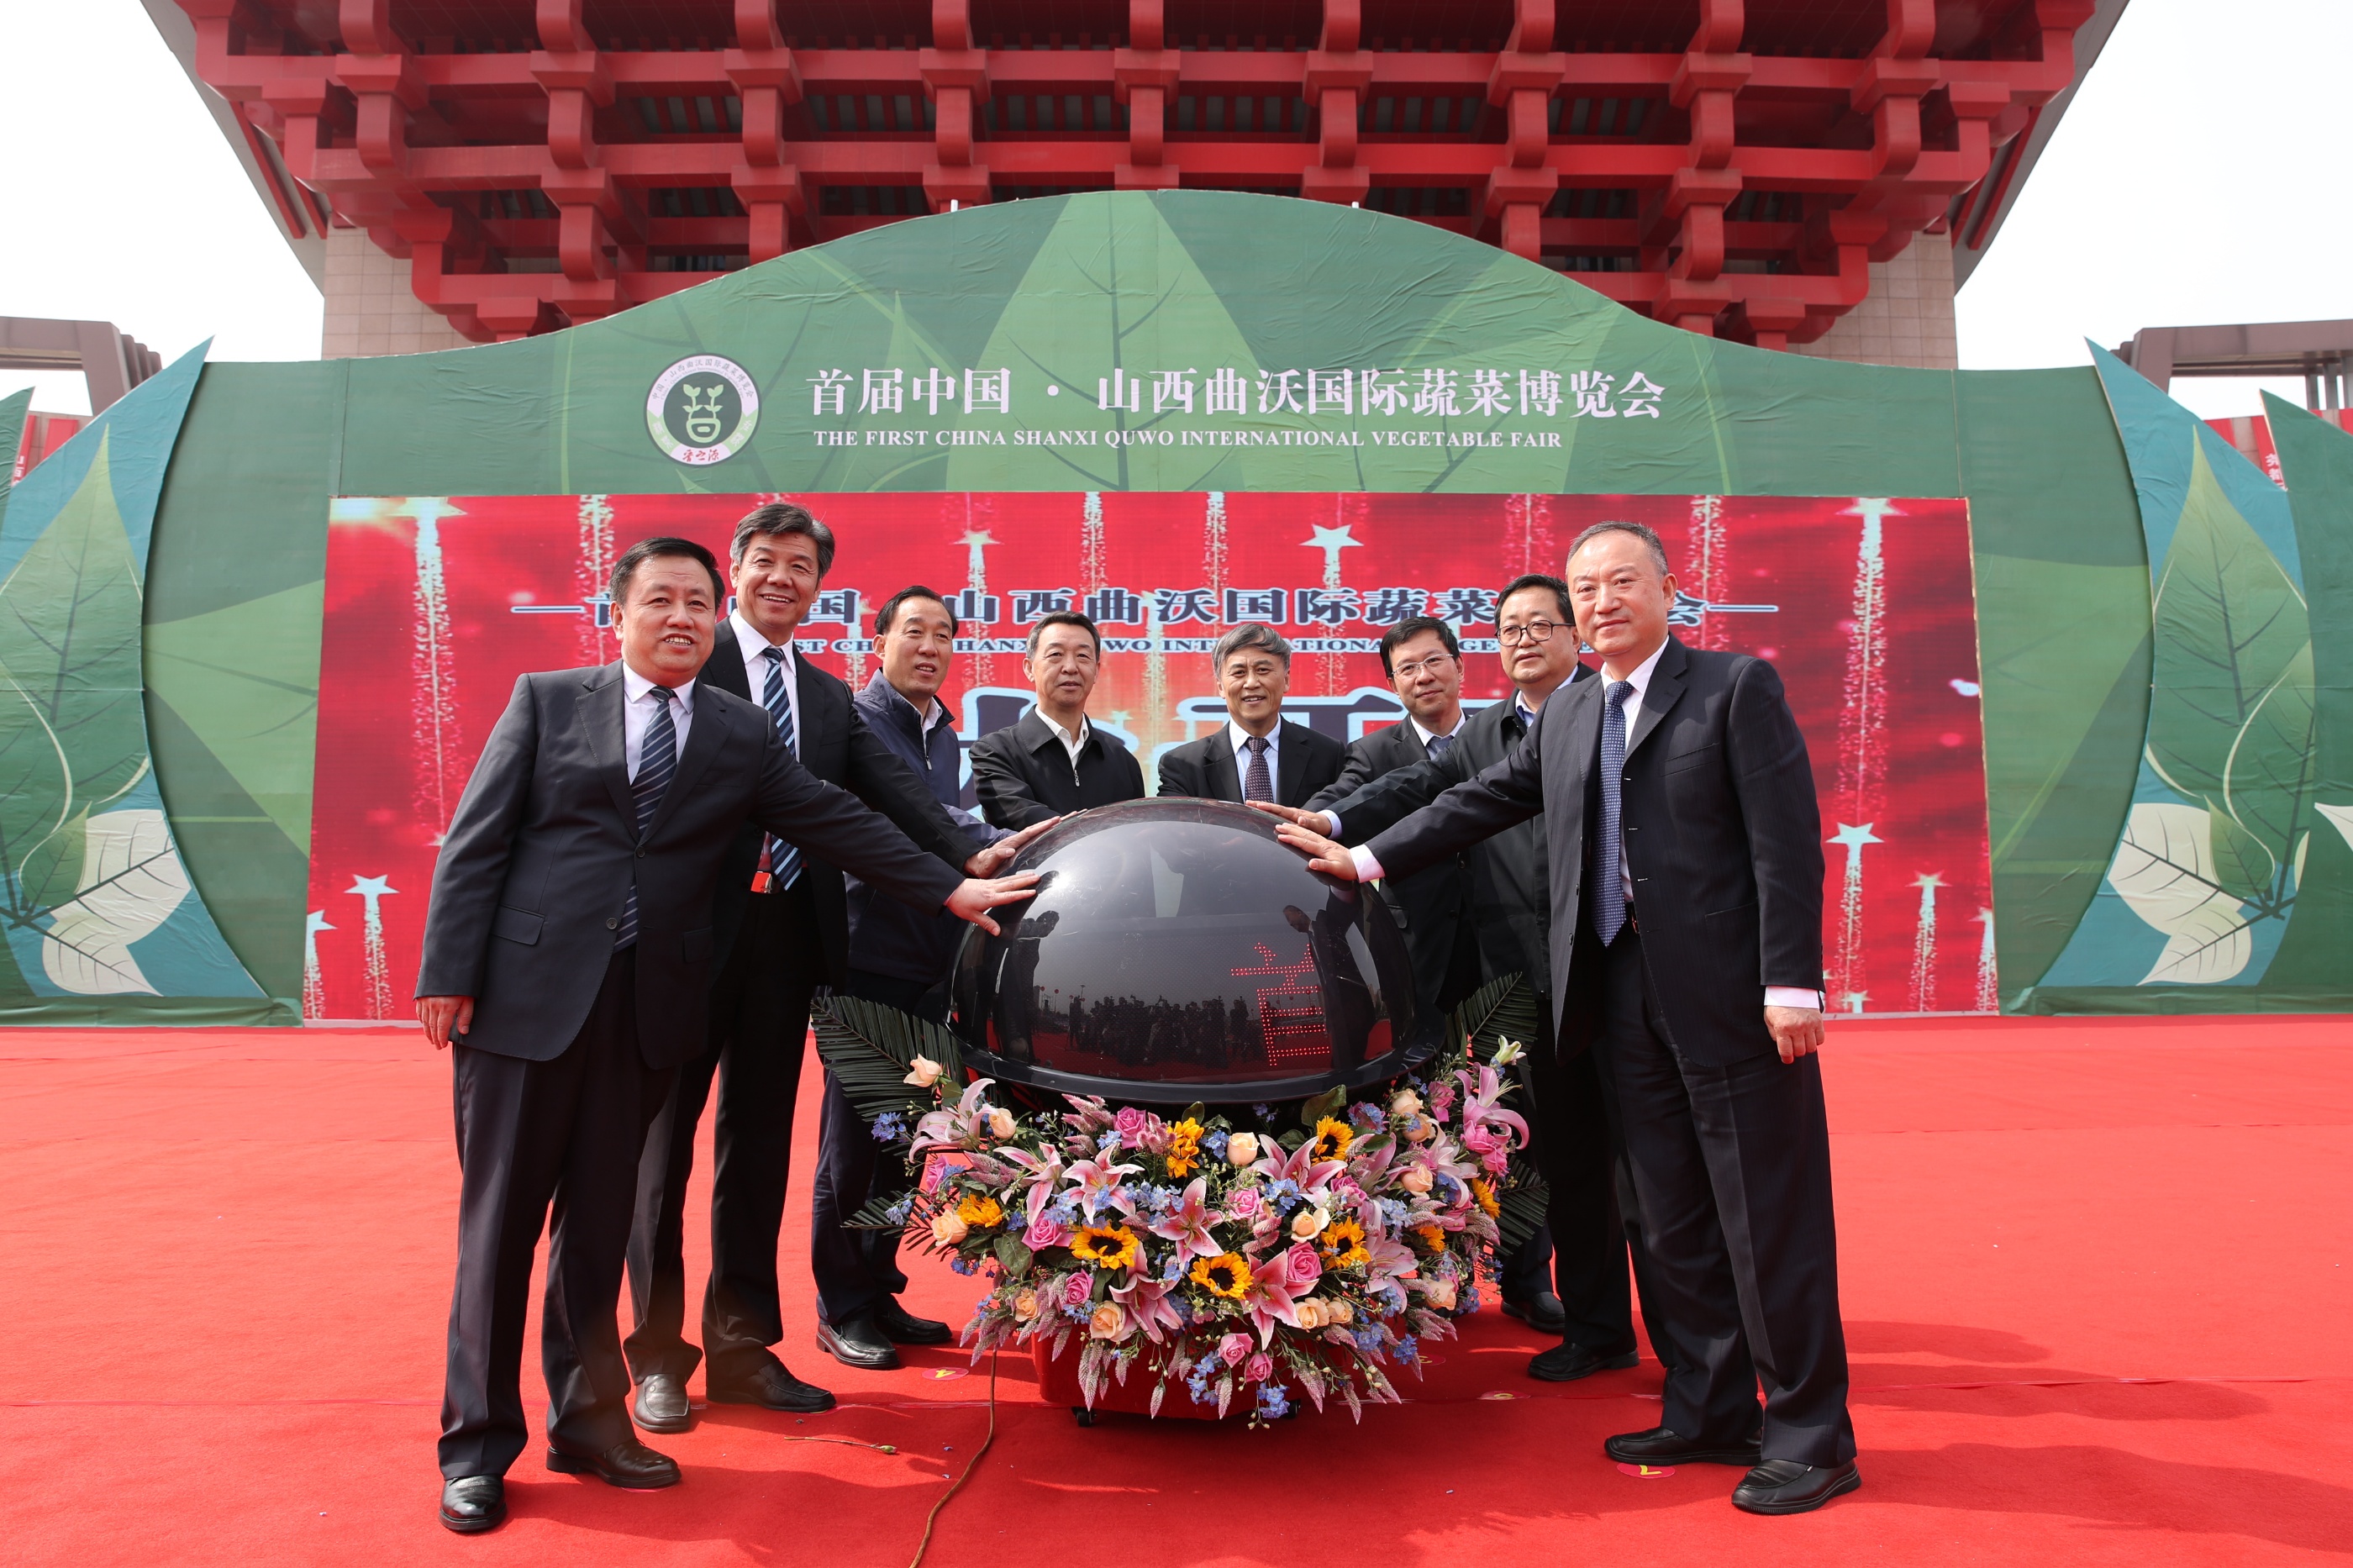 與會領導和嘉賓共同啟動首屆中國P山西曲沃國際蔬菜博覽會開幕水晶球